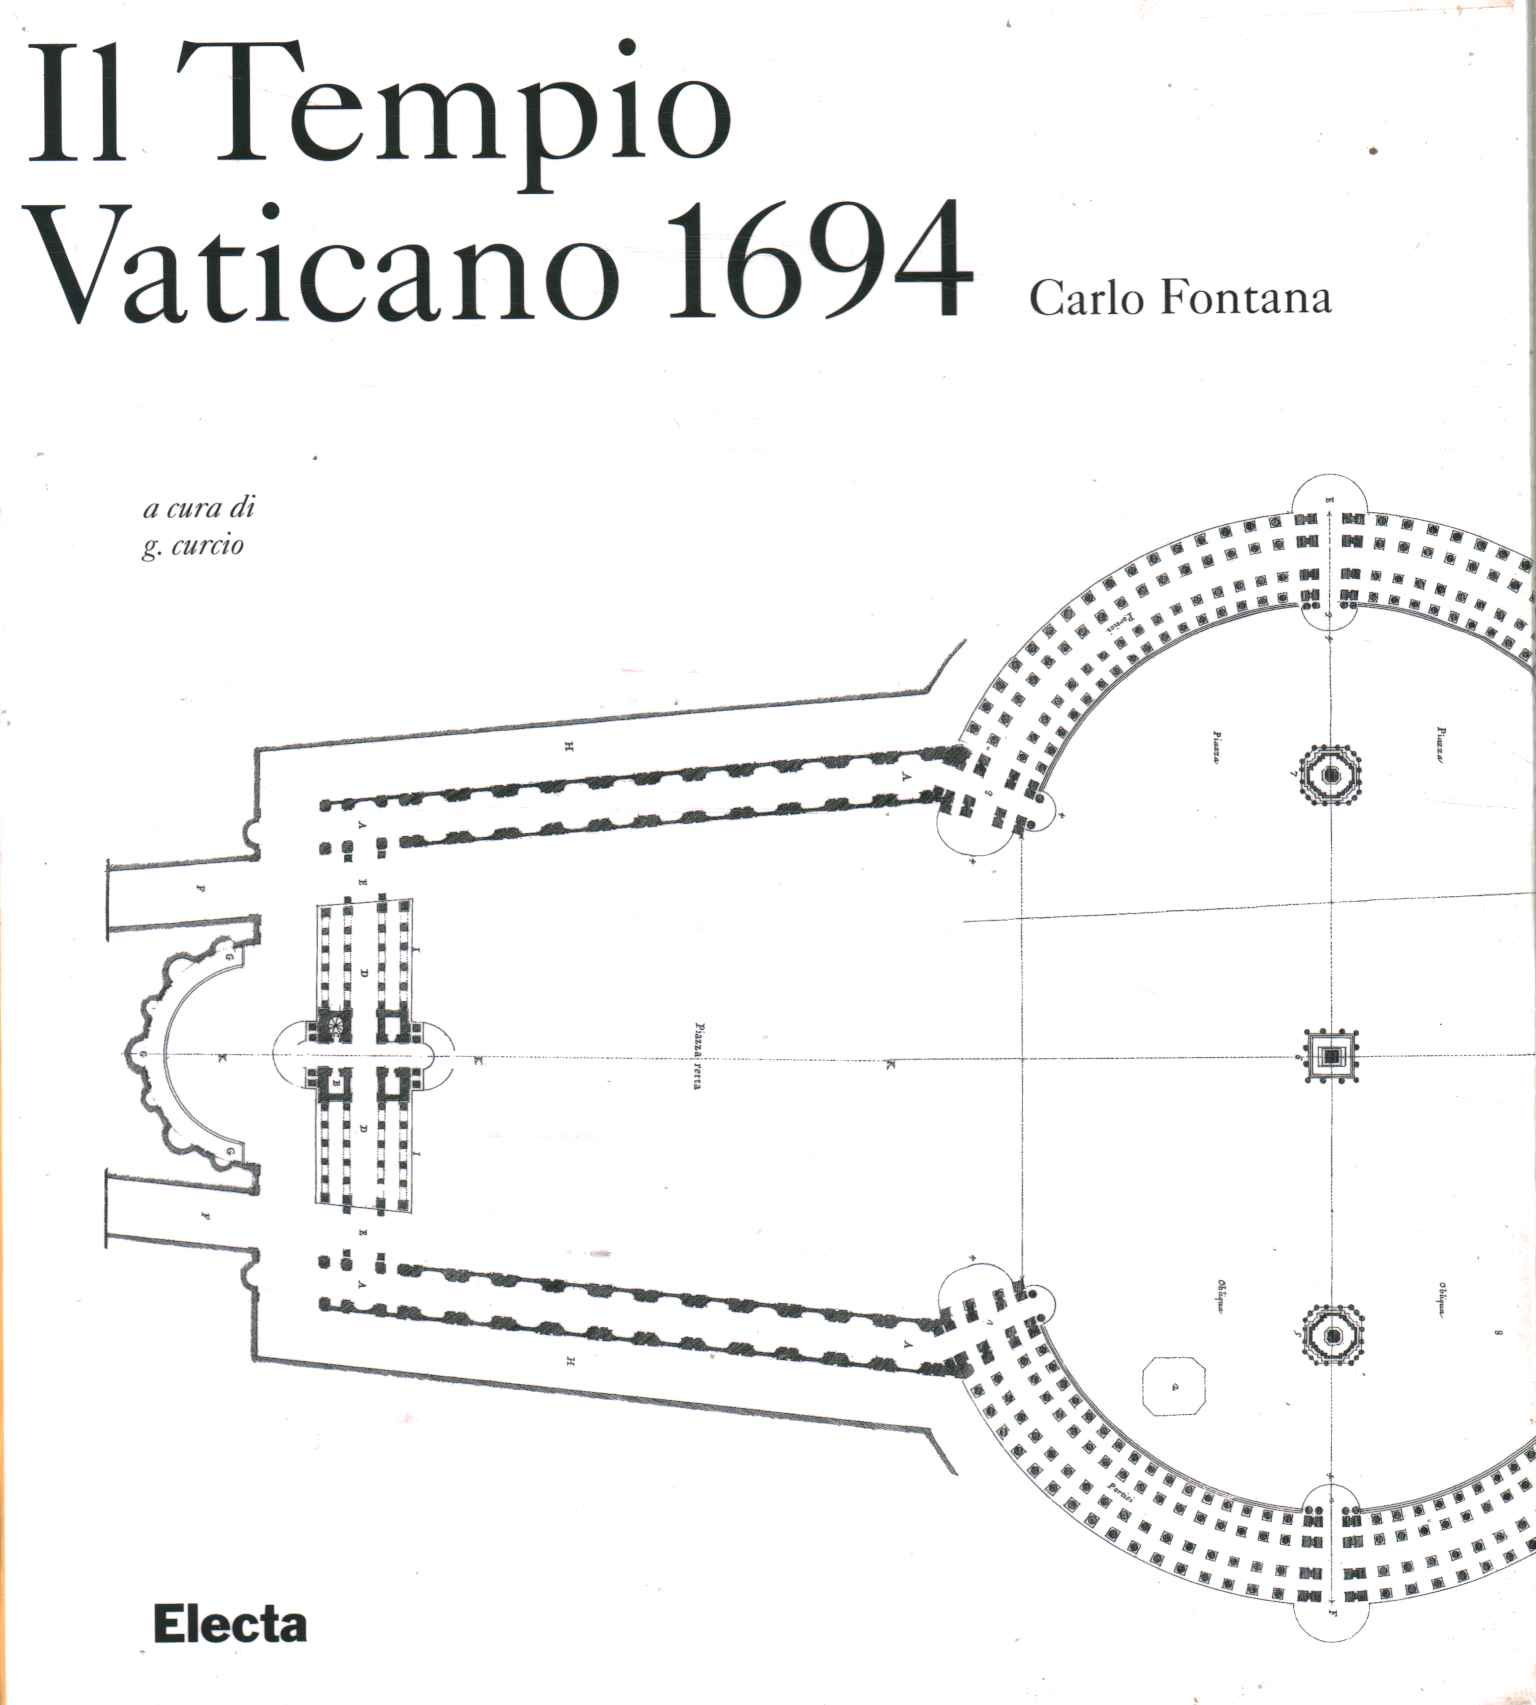 Le Temple du Vatican 1694